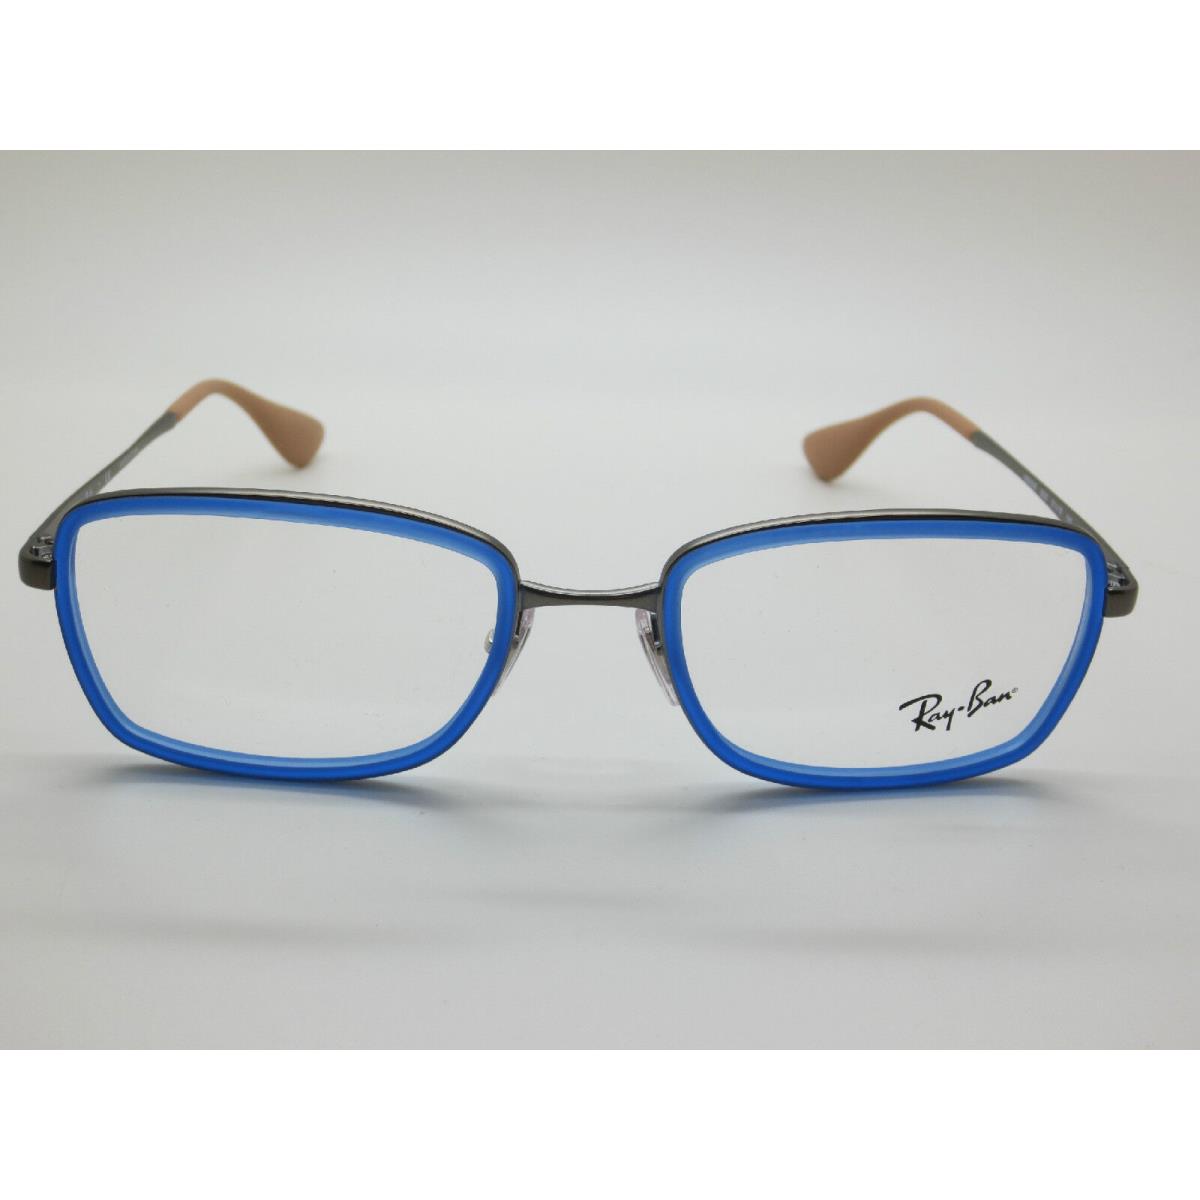 Ray-ban Ray Ban RB 6336 2620 Blue/gunmetal 51mm RX Eyeglasses